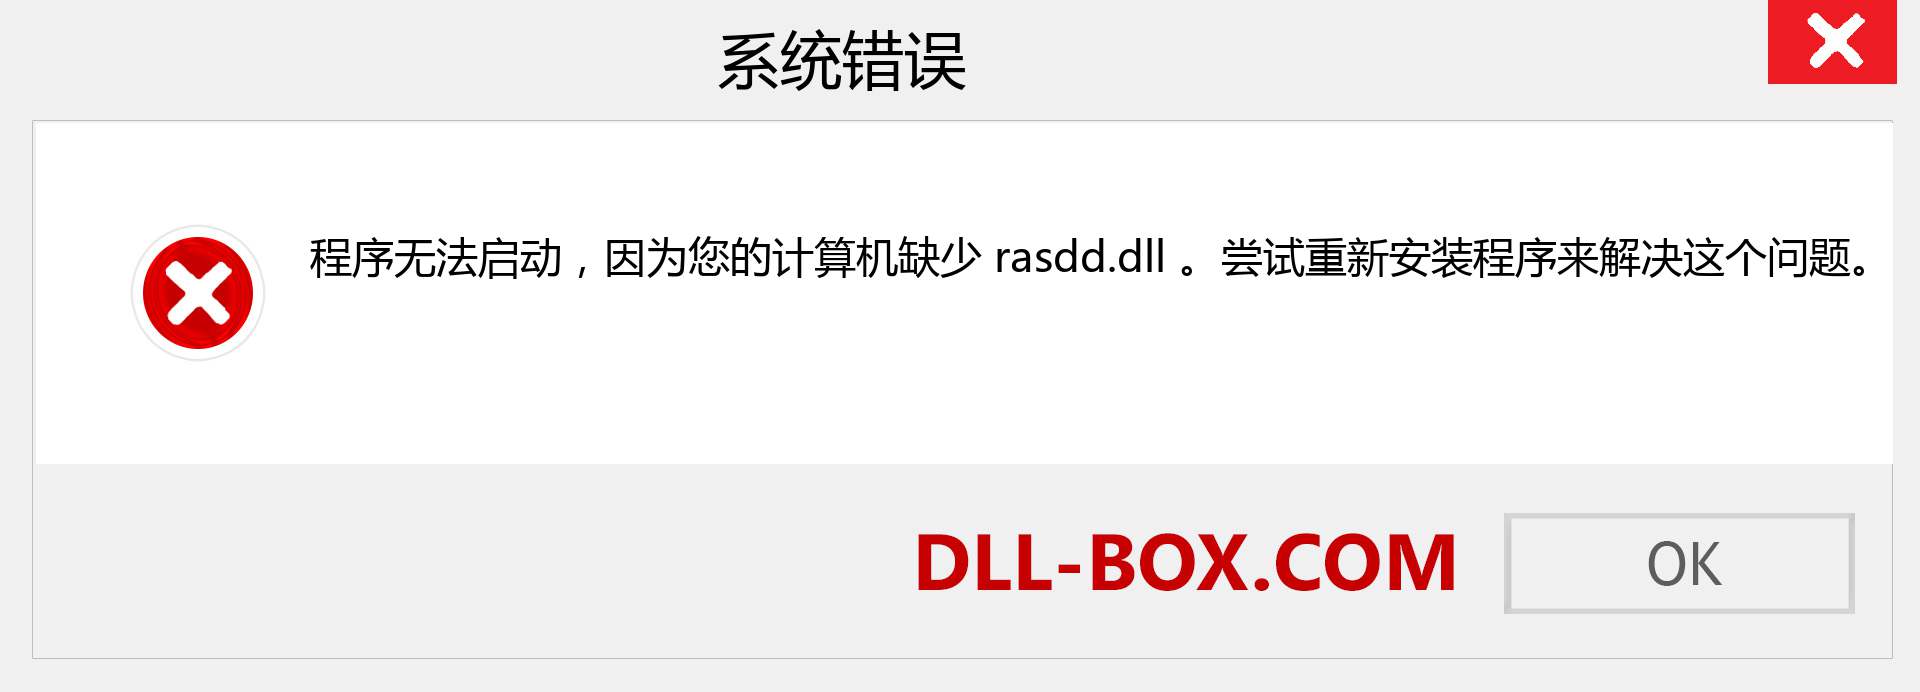 rasdd.dll 文件丢失？。 适用于 Windows 7、8、10 的下载 - 修复 Windows、照片、图像上的 rasdd dll 丢失错误